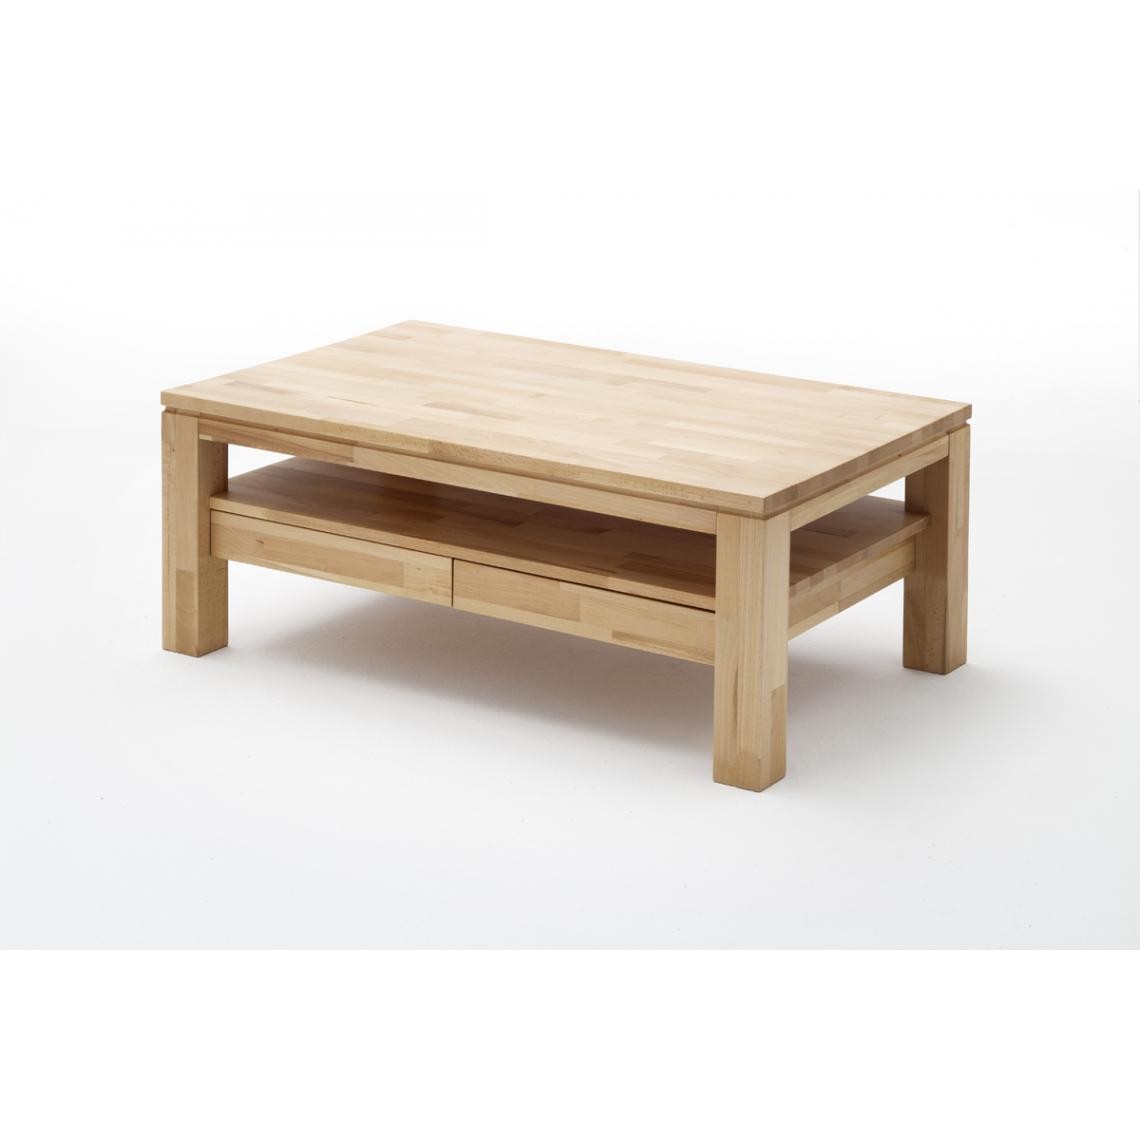 Pegane - Table basse avec 2 tiroirs en bois de hêtre huilé - L115 x H45 x P70 cm - Tables basses